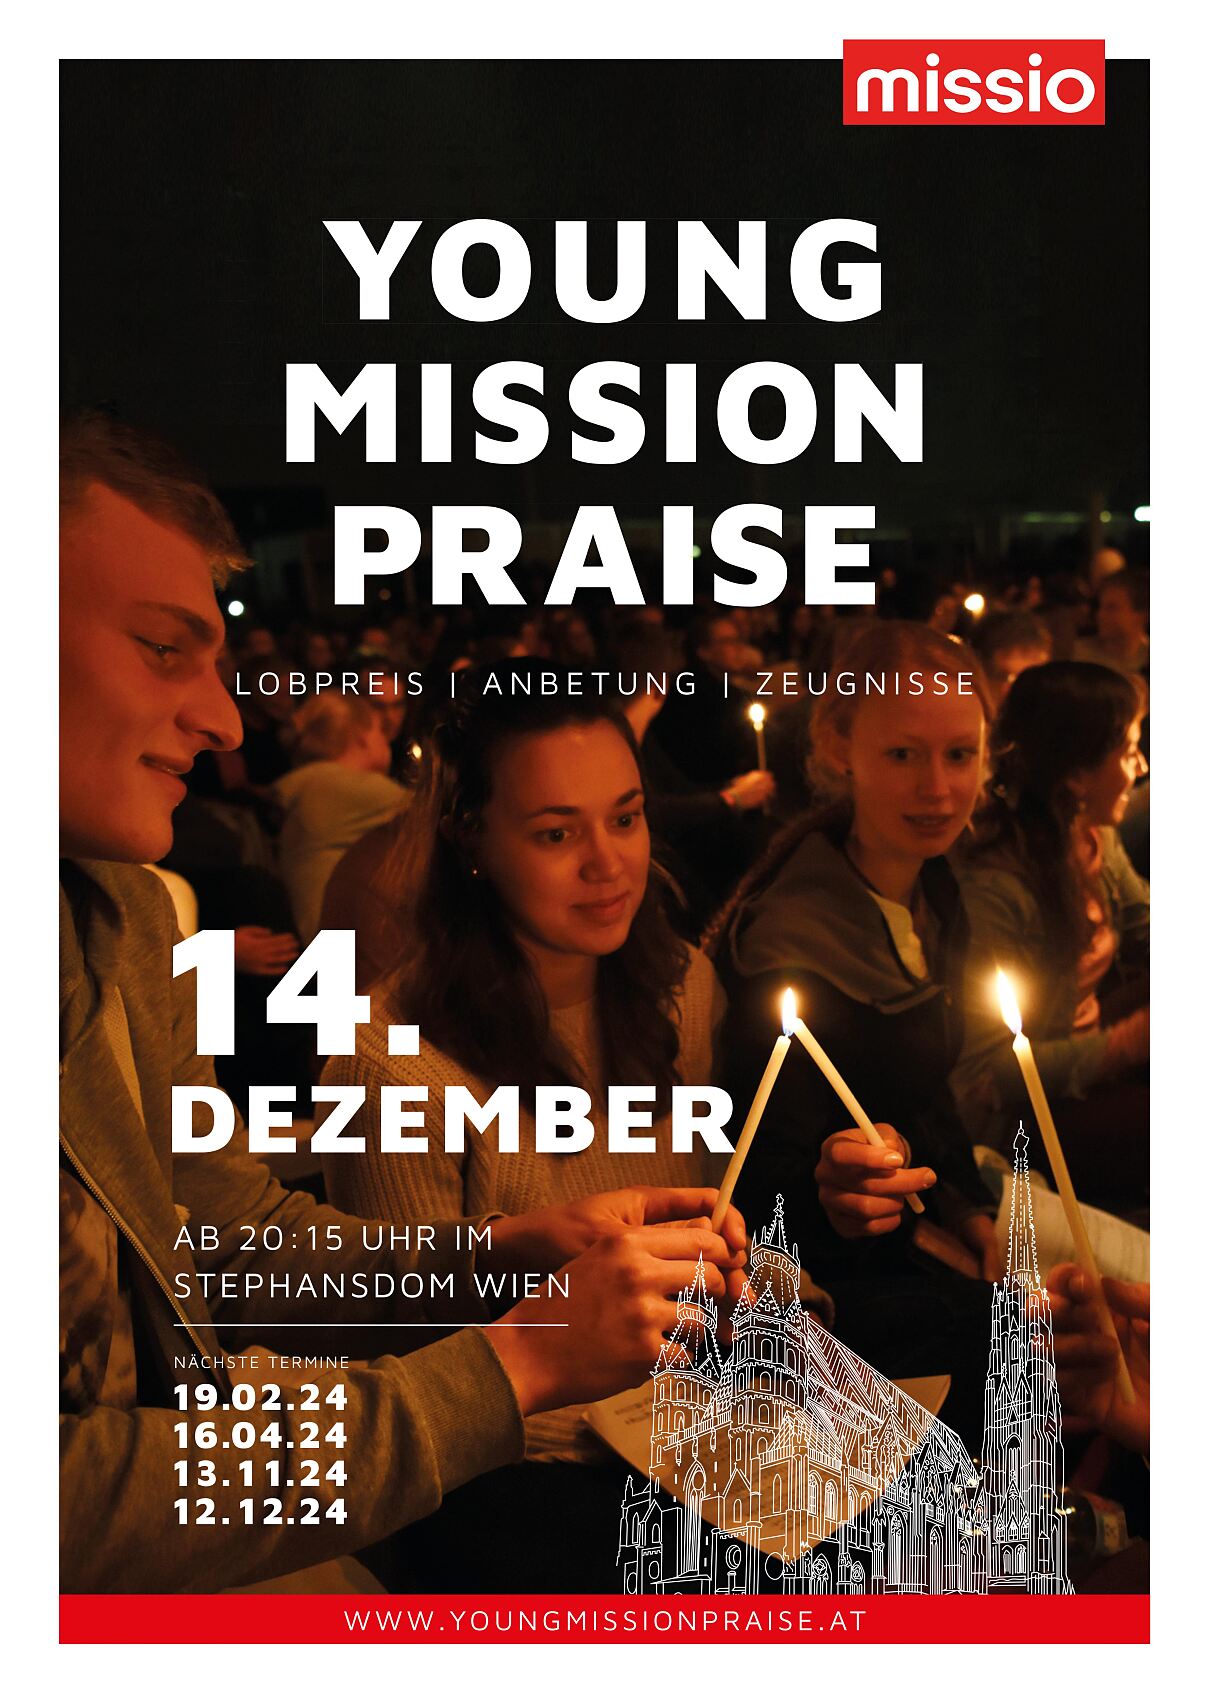 Young Mission Praise für junge Menschen im Stephansdom